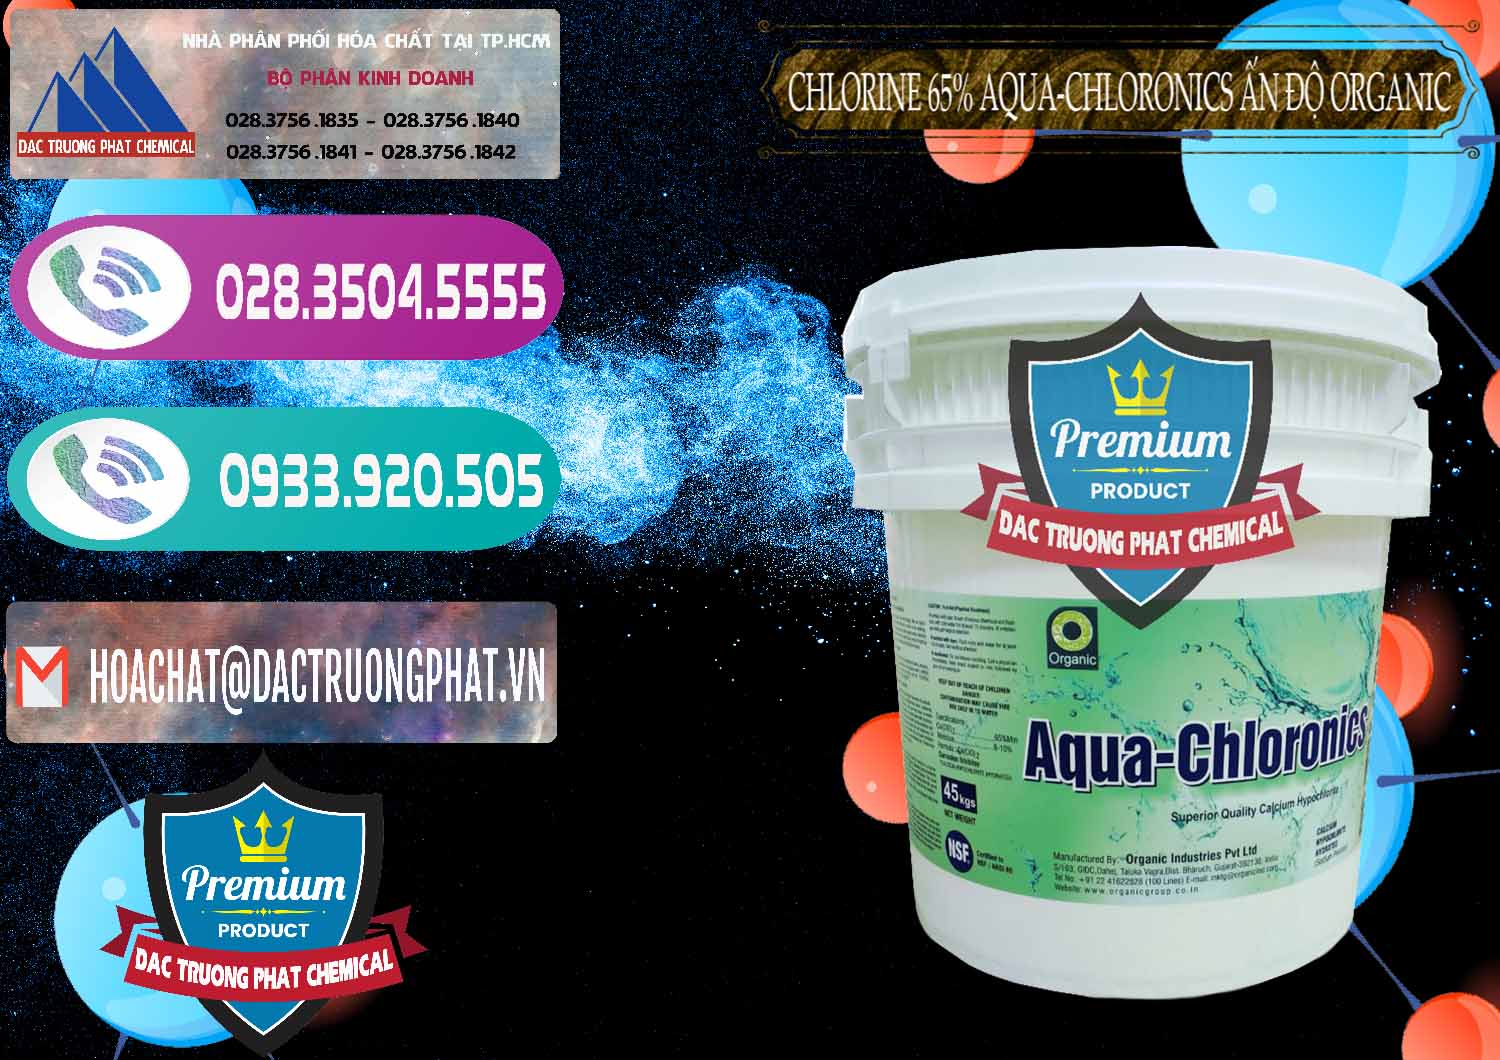 Cty chuyên bán _ phân phối Chlorine – Clorin 65% Aqua-Chloronics Ấn Độ Organic India - 0210 - Đơn vị chuyên kinh doanh và phân phối hóa chất tại TP.HCM - hoachatxulynuoc.com